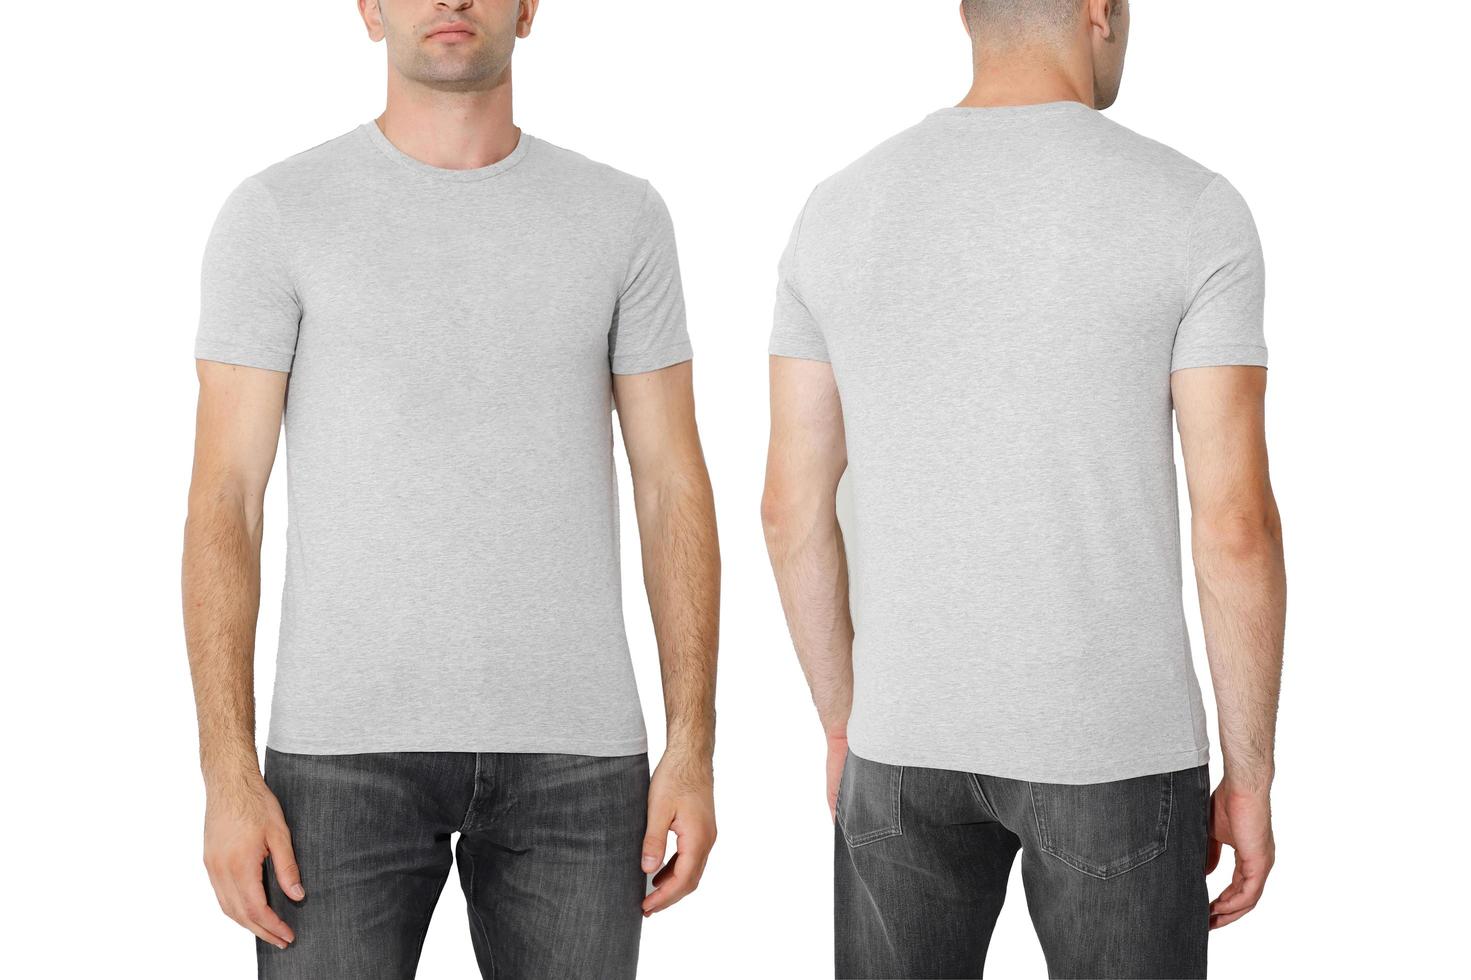 t-shirt på en man, isolerad på en vit bakgrund, kopiera utrymmet foto